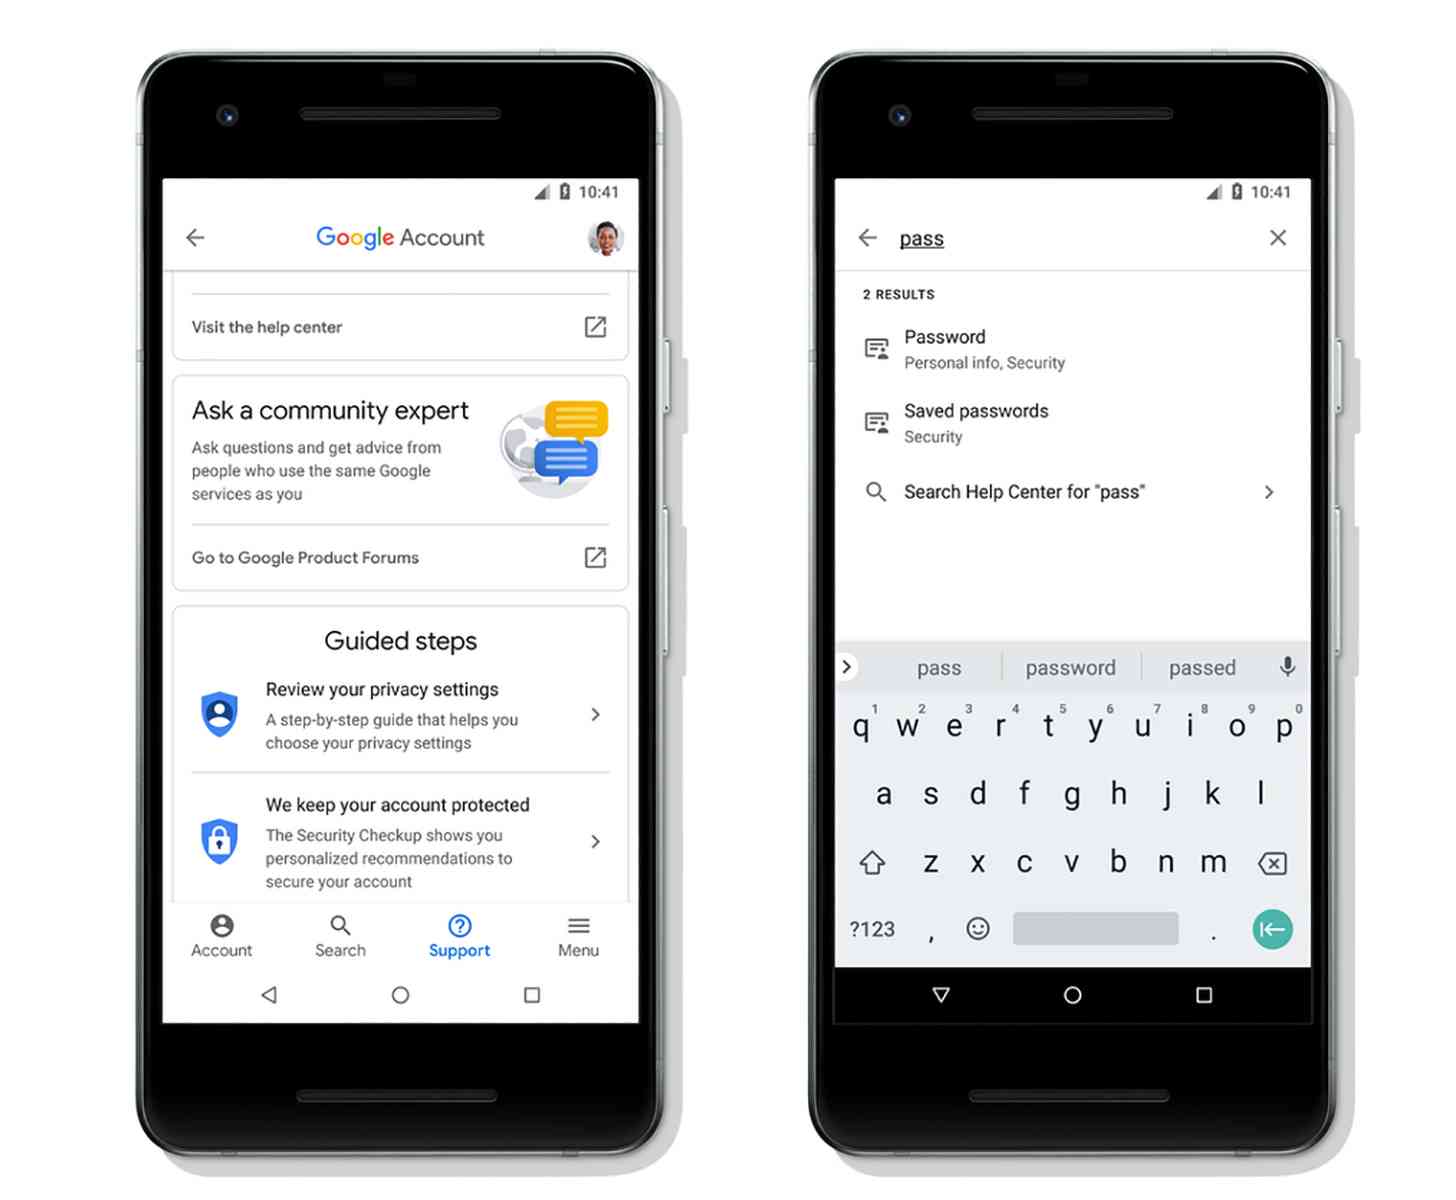 Google Account UI update search